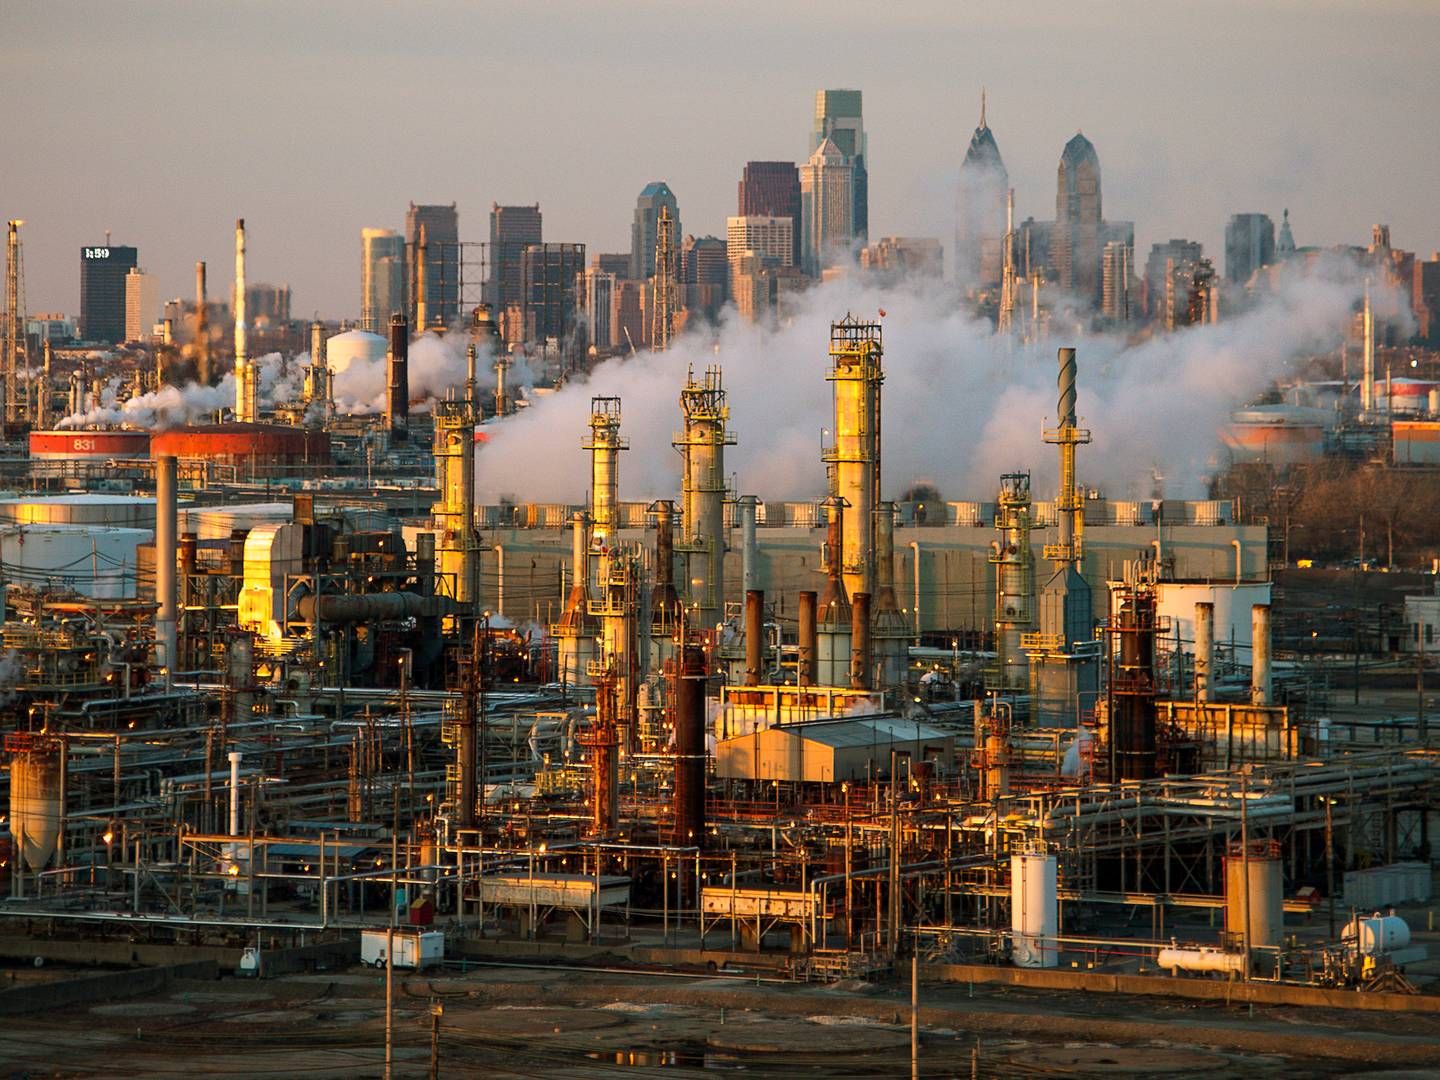 Philadelphia Energy Solutions' olieraffinaderi, det største i det nordøstlige USA, er ved at blive revet ned for at gøre plads for et nyt erhvervsområde. Det sker på trods af, at olieraffinaderierne tjener styrtende med penge. | Foto: David M. Parrott/Reuters/Ritzau Scanpix